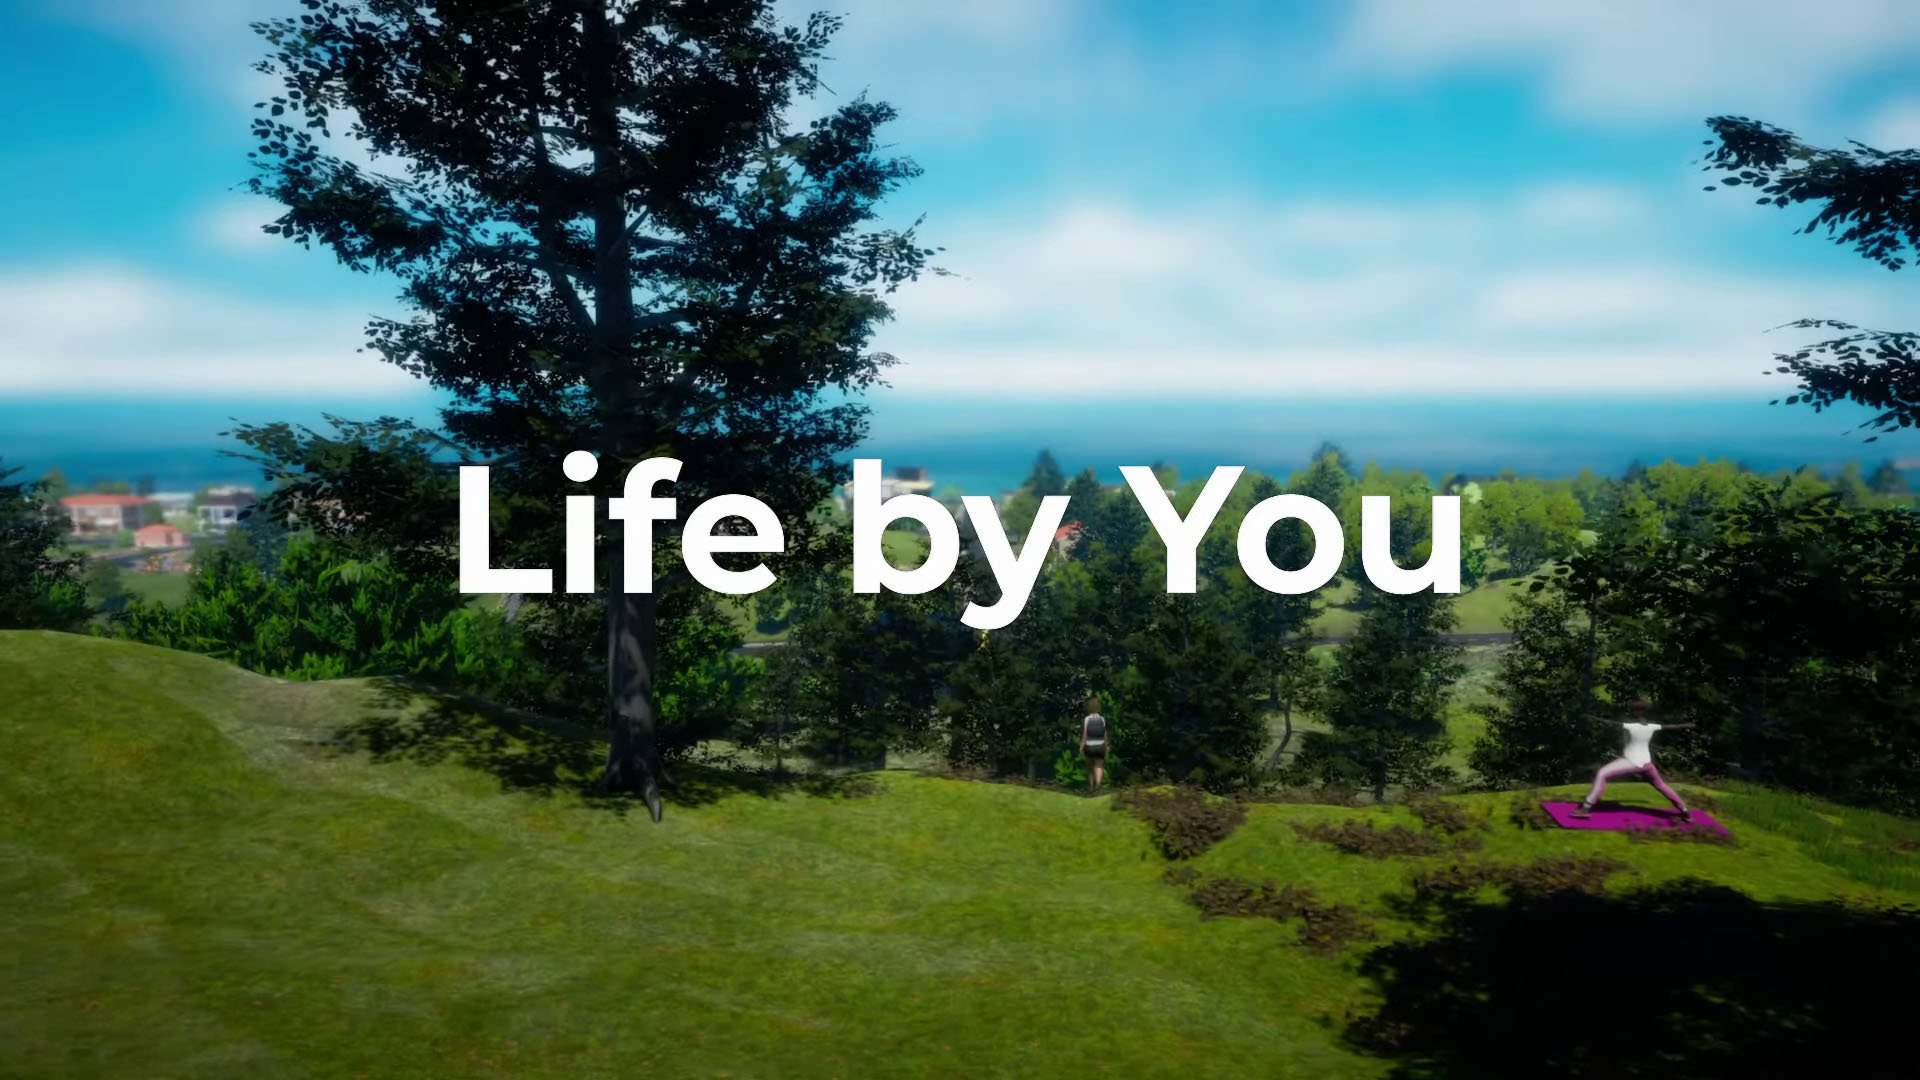 Розробники головного конкурента The Sims - Life By You розкрили дату випуску гри в ранньому доступі та поділилися іншими деталями